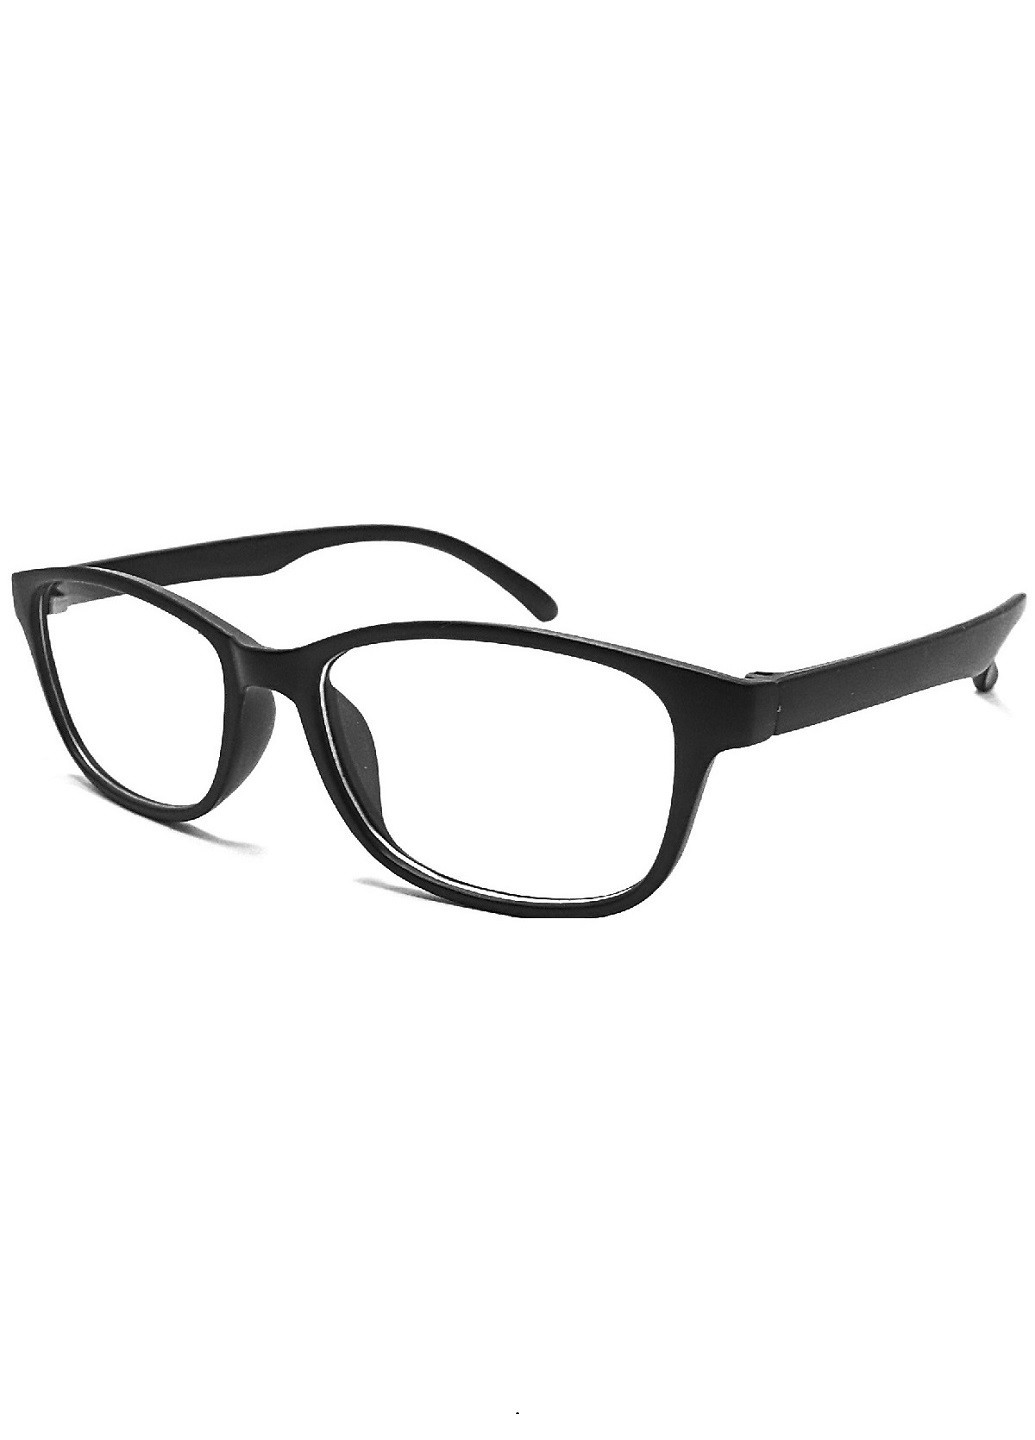 Имиджевые очки A&Co. чёрные